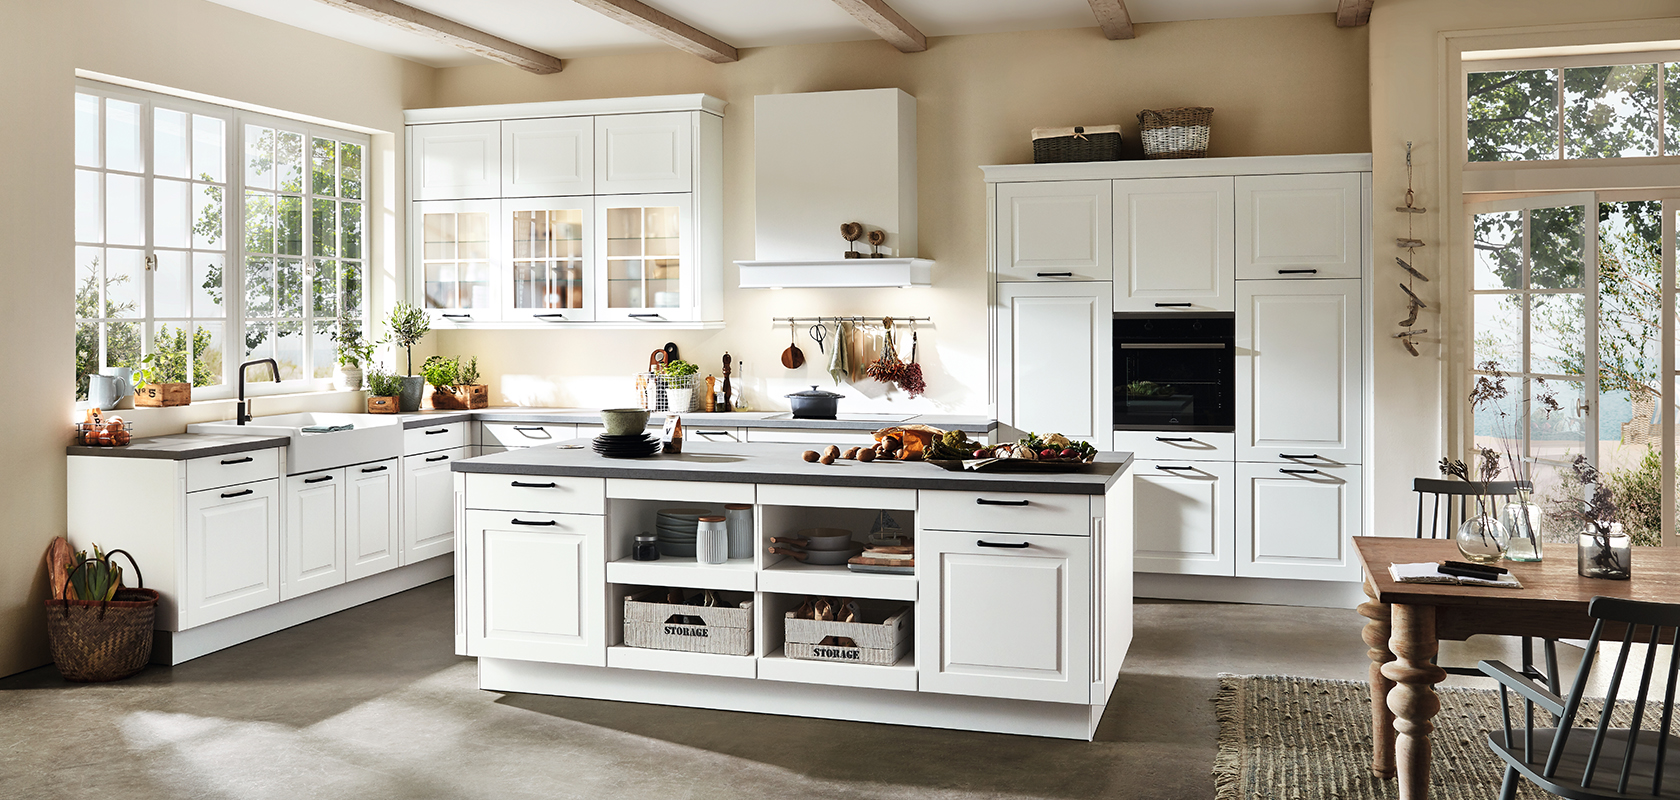 Przestrzenny wnętrze kuchni z białymi szafkami, czarnymi blatami, nowoczesnymi urządzeniami kuchennymi i centralną wyspą oświetloną naturalnym światłem z dużych okien.